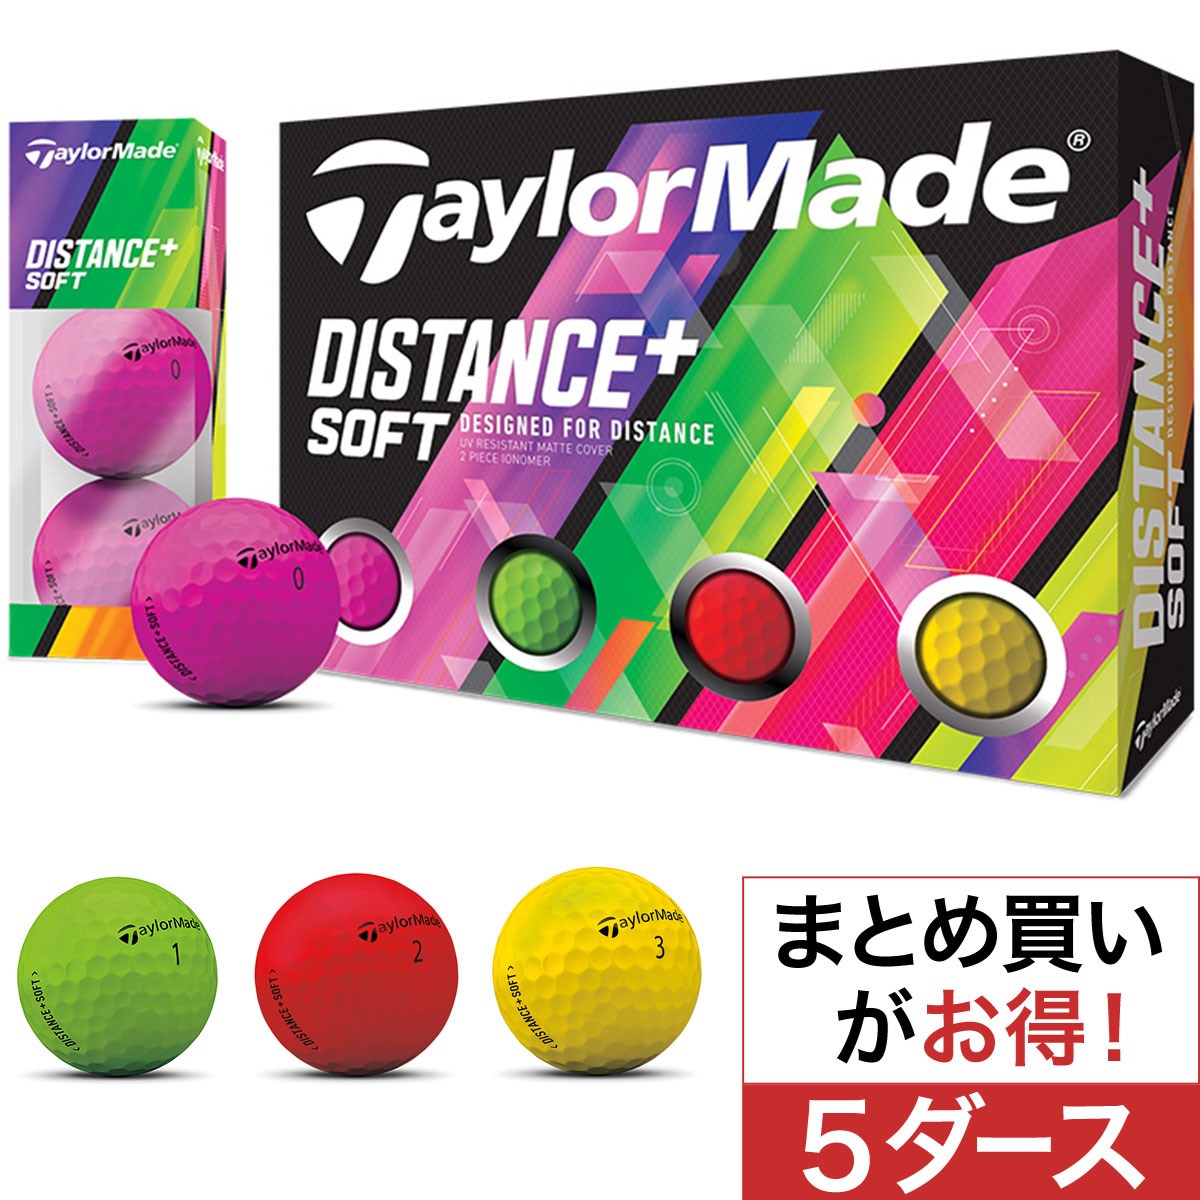 テーラーメイド(Taylor Made) Distance+ ソフト マルチカラーボール 5ダースセット 